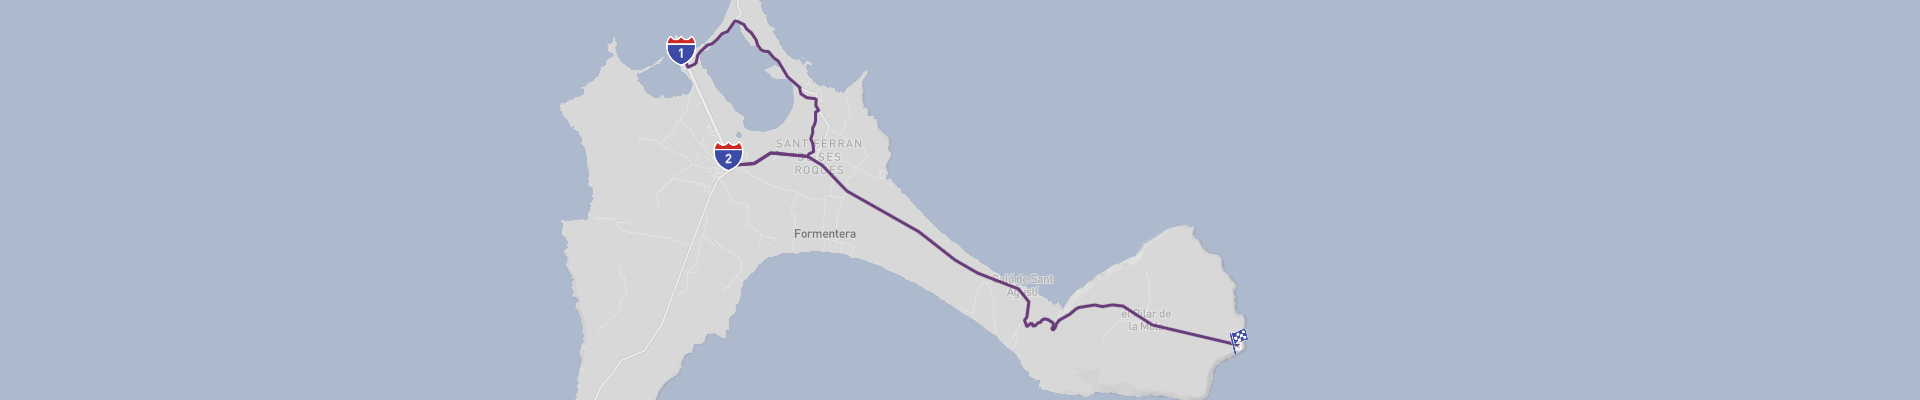 Formentera Panoramic Road